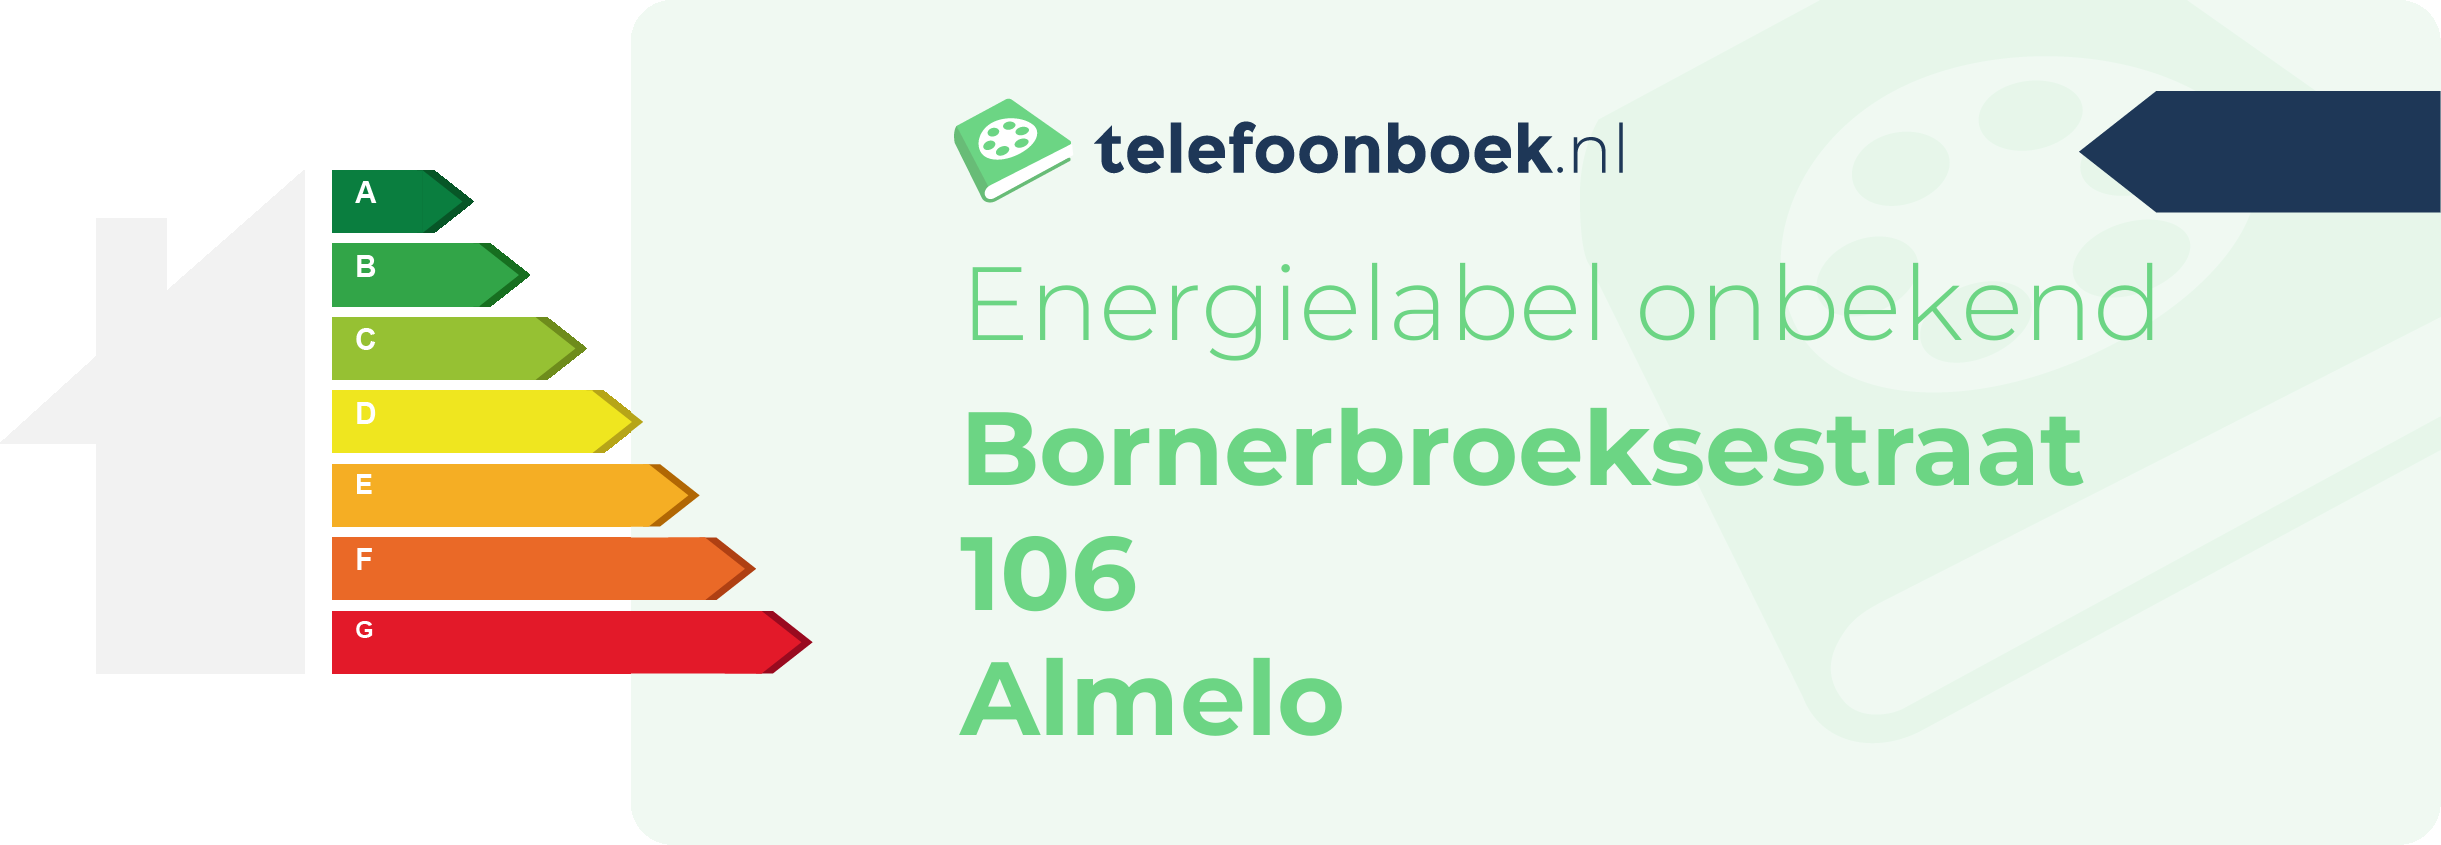 Energielabel Bornerbroeksestraat 106 Almelo